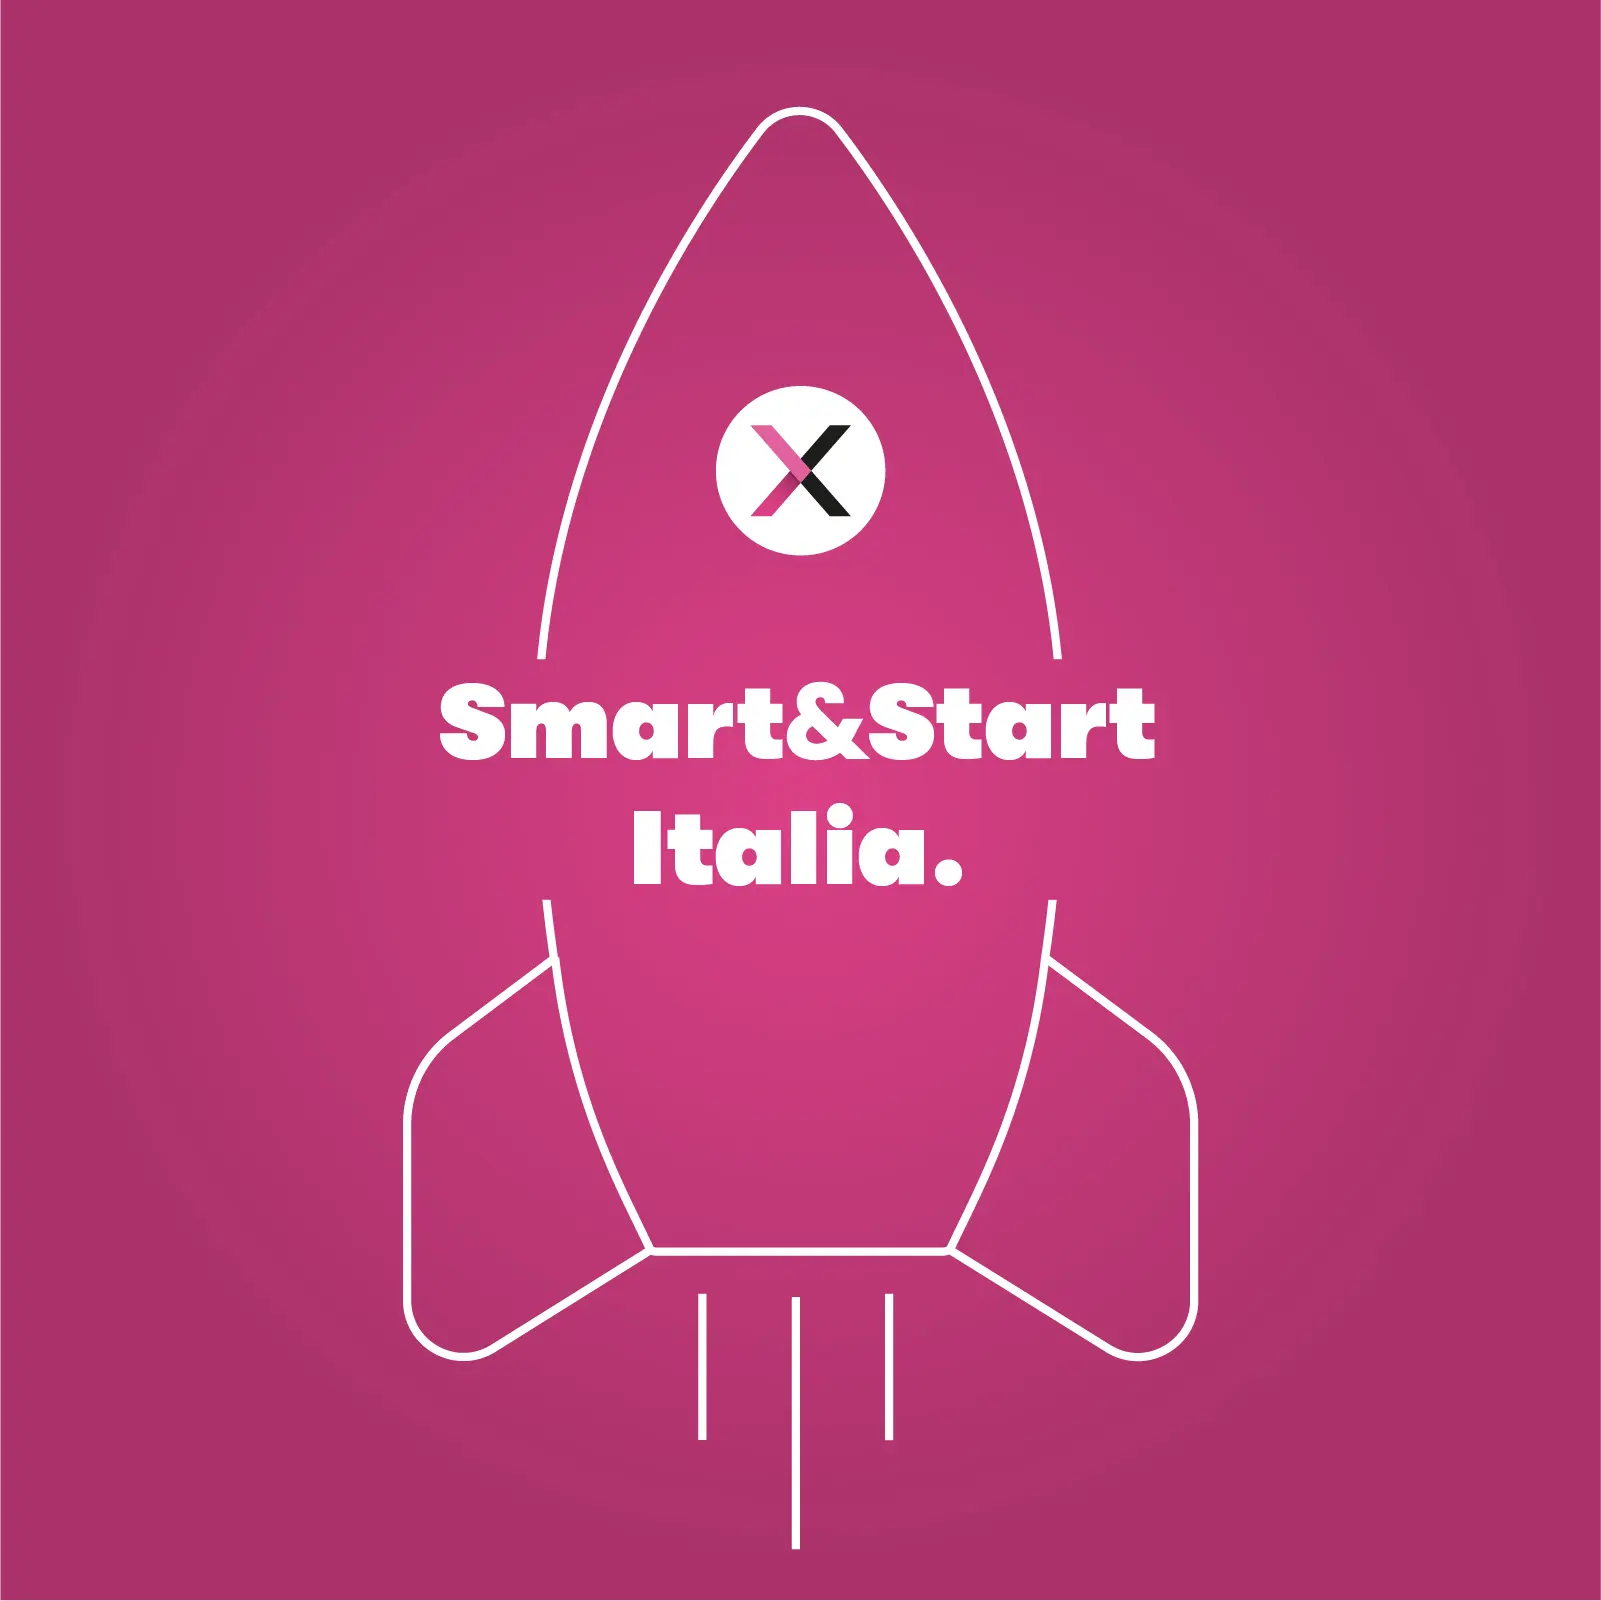 Smart&Start Italia per l’innovazione: informazioni utili sui finanziamenti per startup nel 2020.